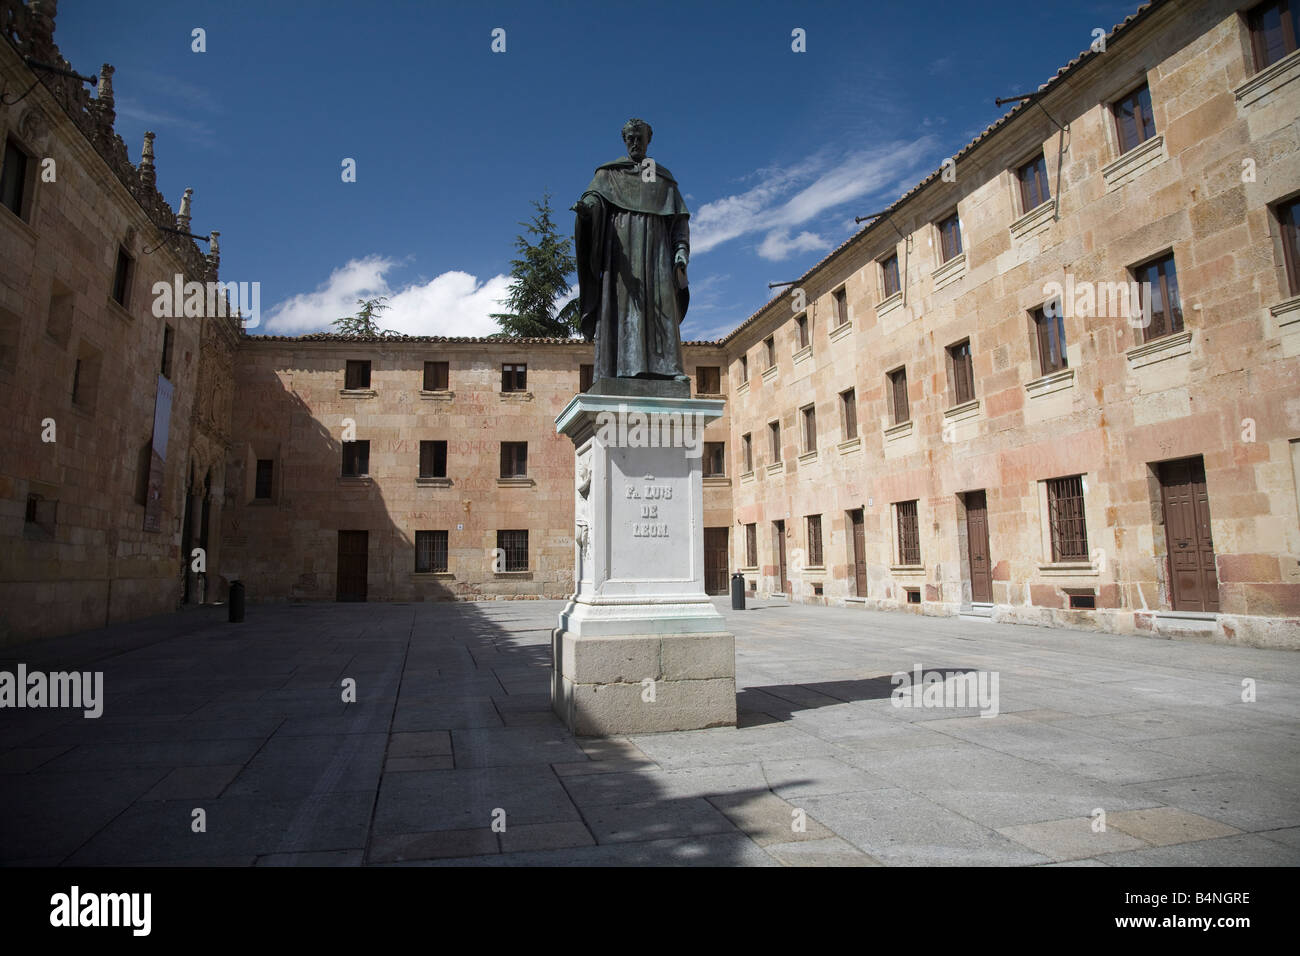 Salamanca - statue of Fray Luis de León (poet) Stock Photo